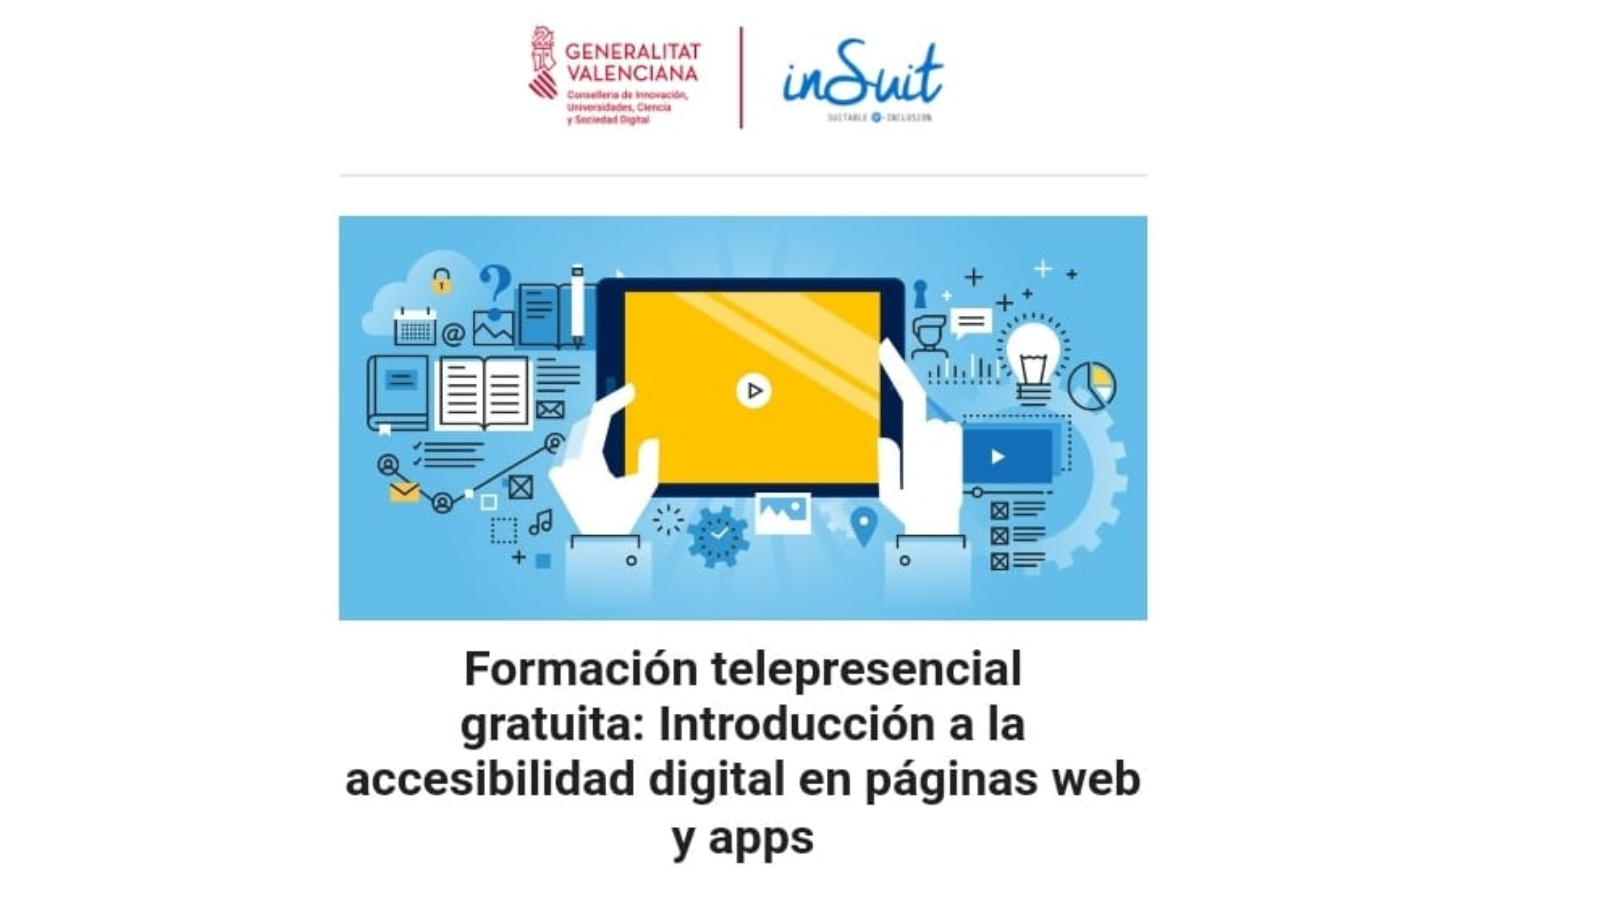 Cartel de la formación telpresencial gratuita 'Introducción a la accesibilidad digital en páginas web y apps', con una creatividad de dos manos manejando una tablet y los logos de la Conselleria de Innovación y de Insuit